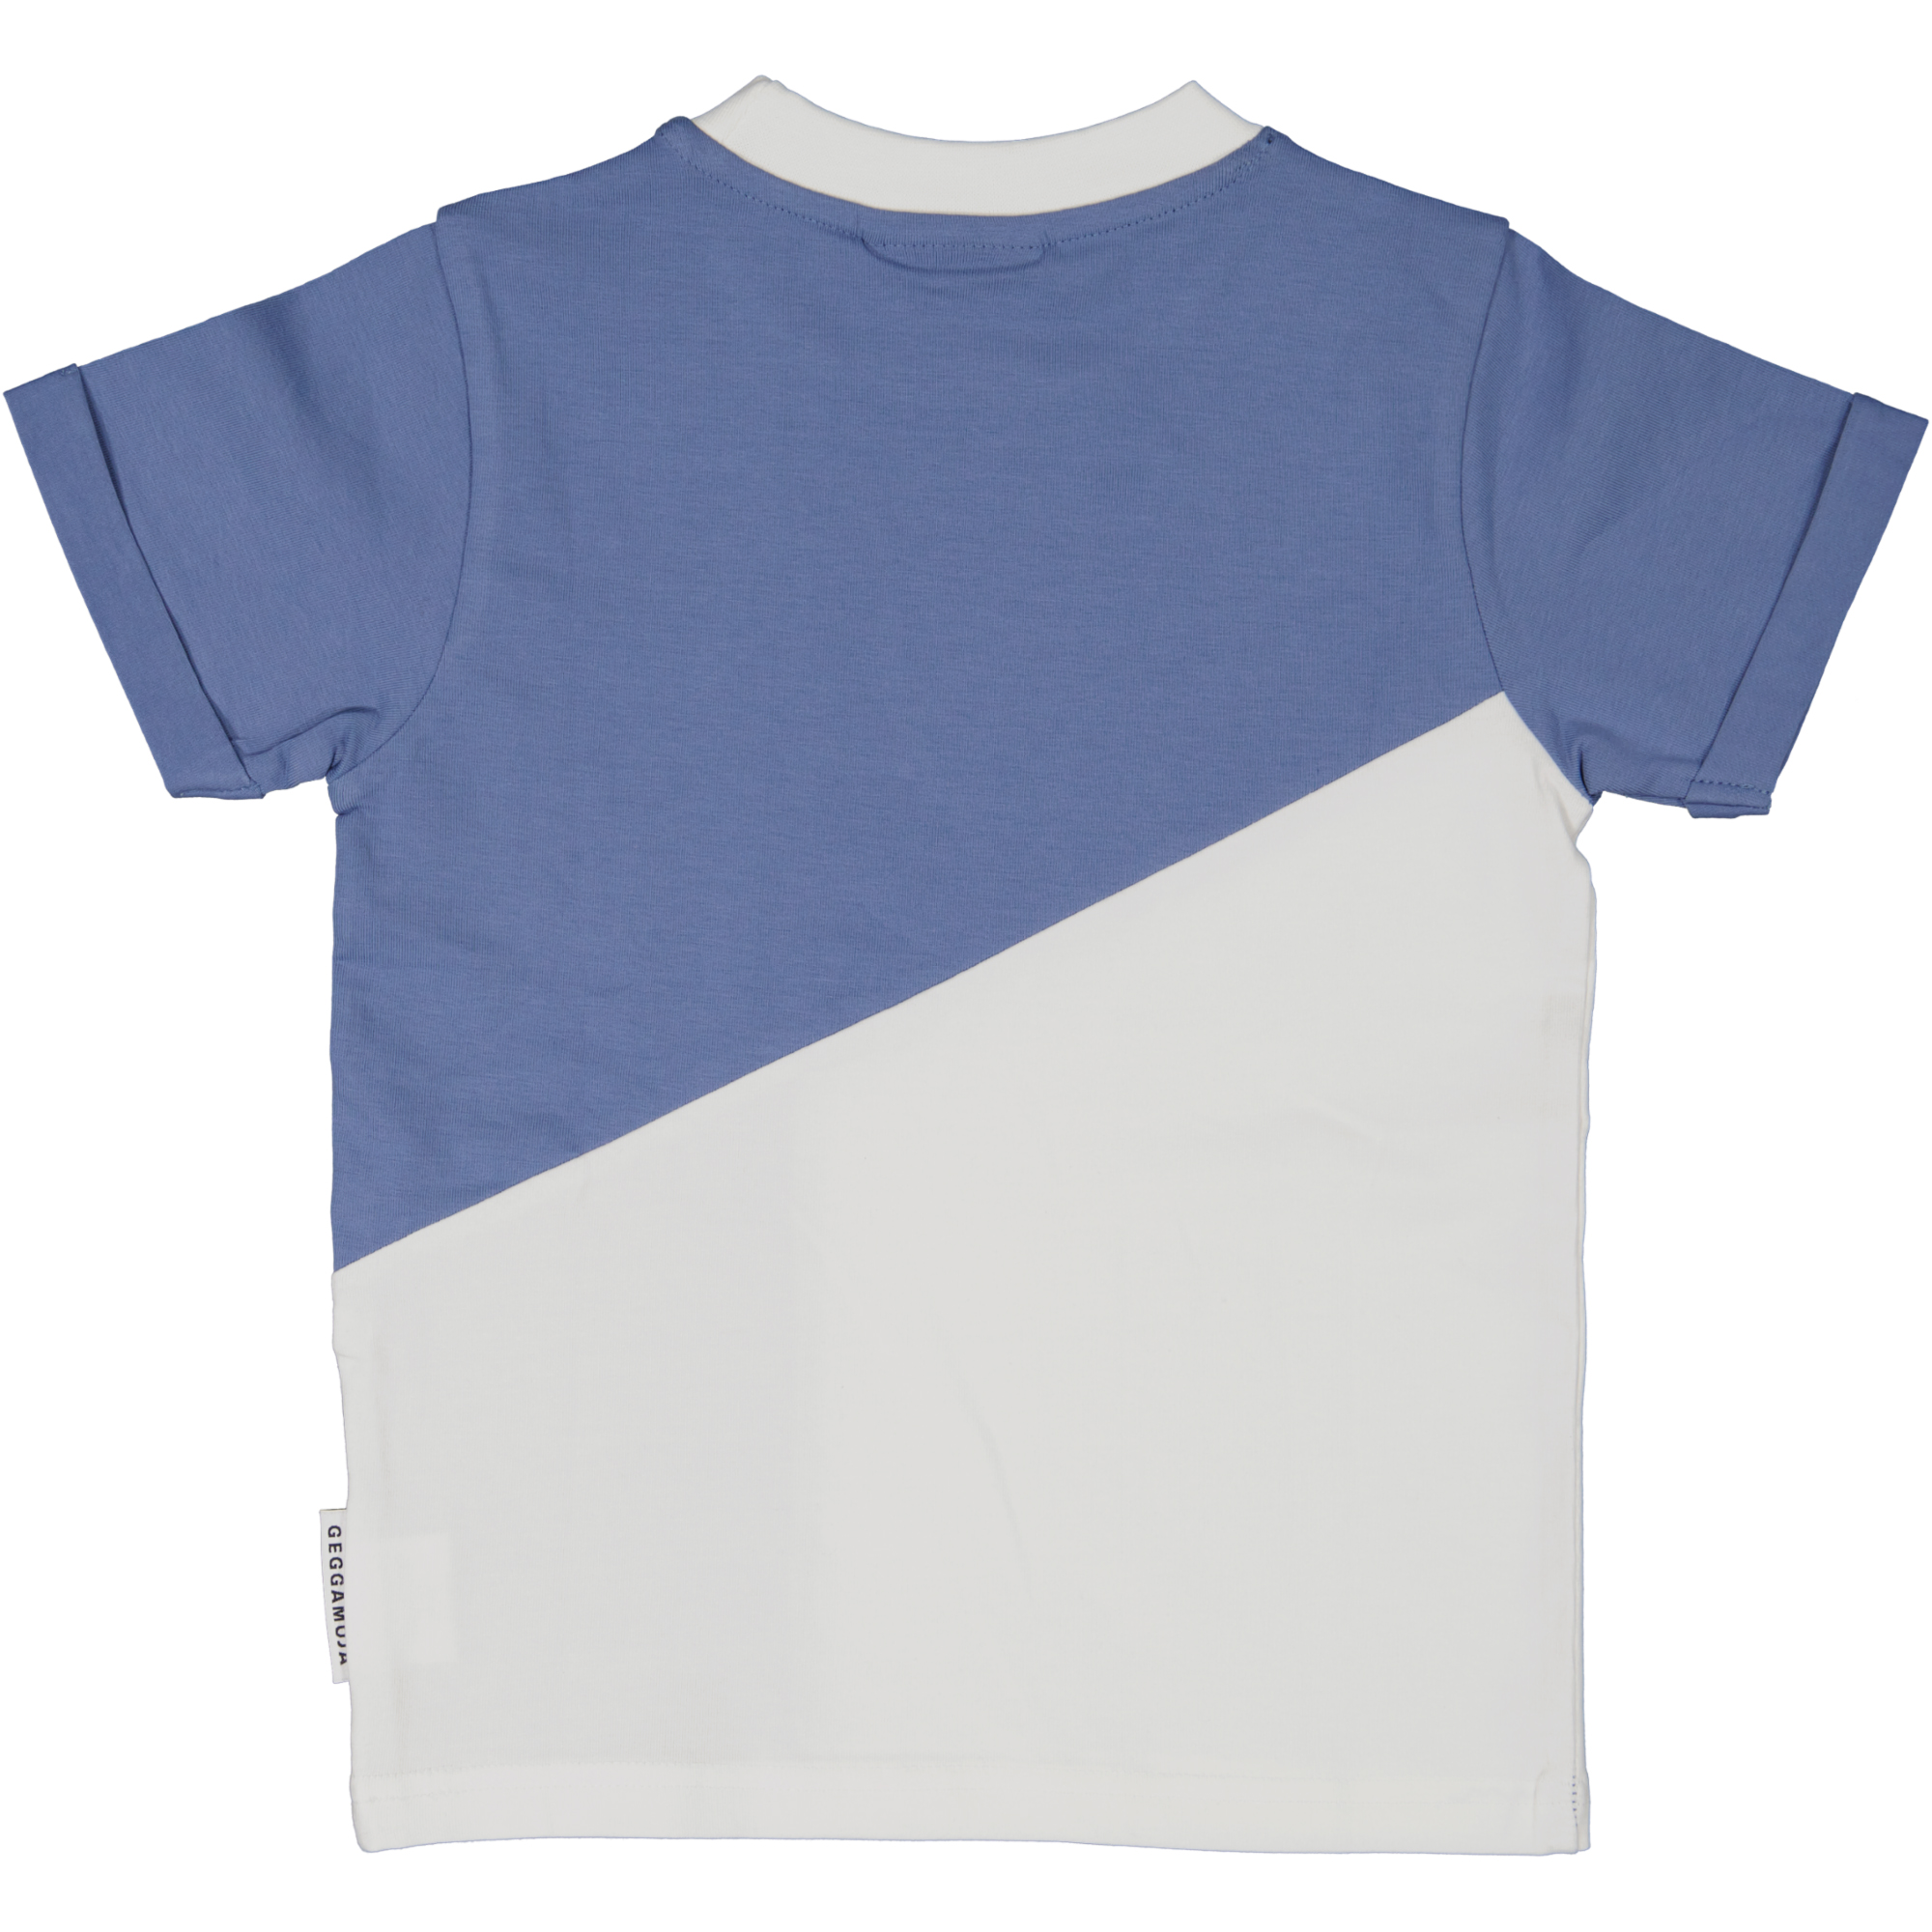 T-shirt Blå/Grå